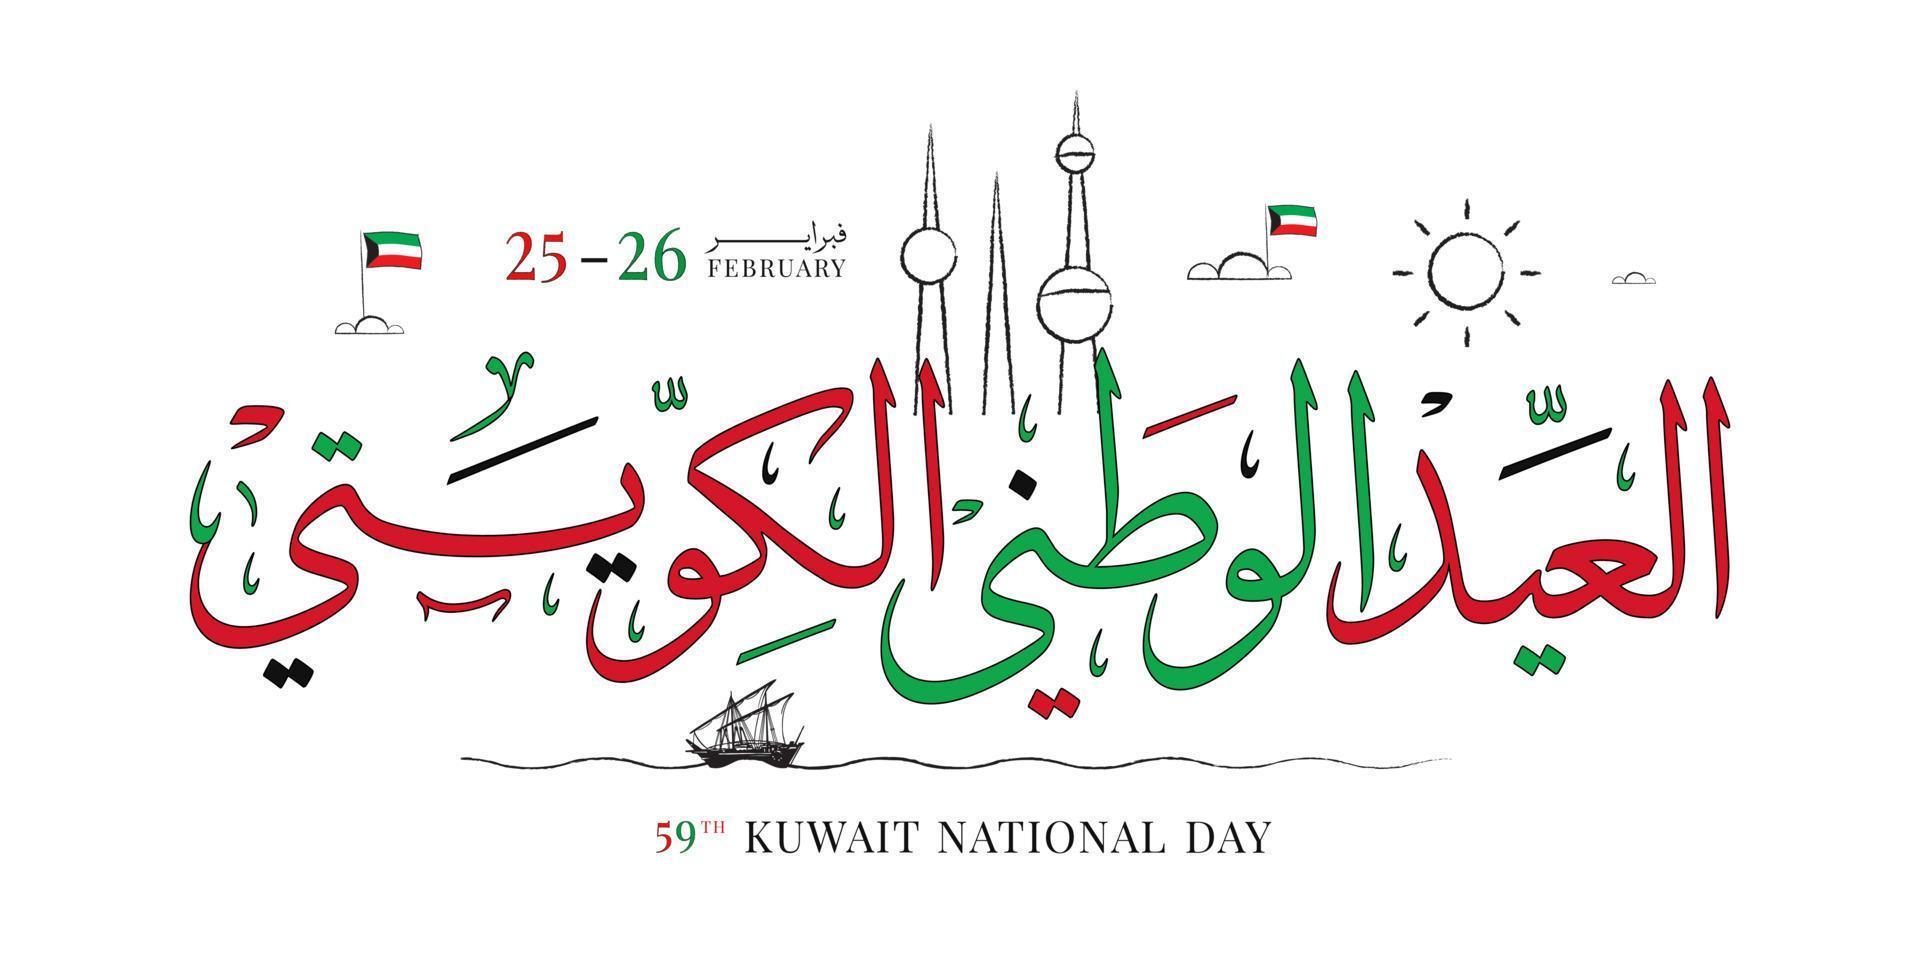 día nacional de kuwait 25 26 de febrero, día de la independencia de kuwait ilustración vectorial vector